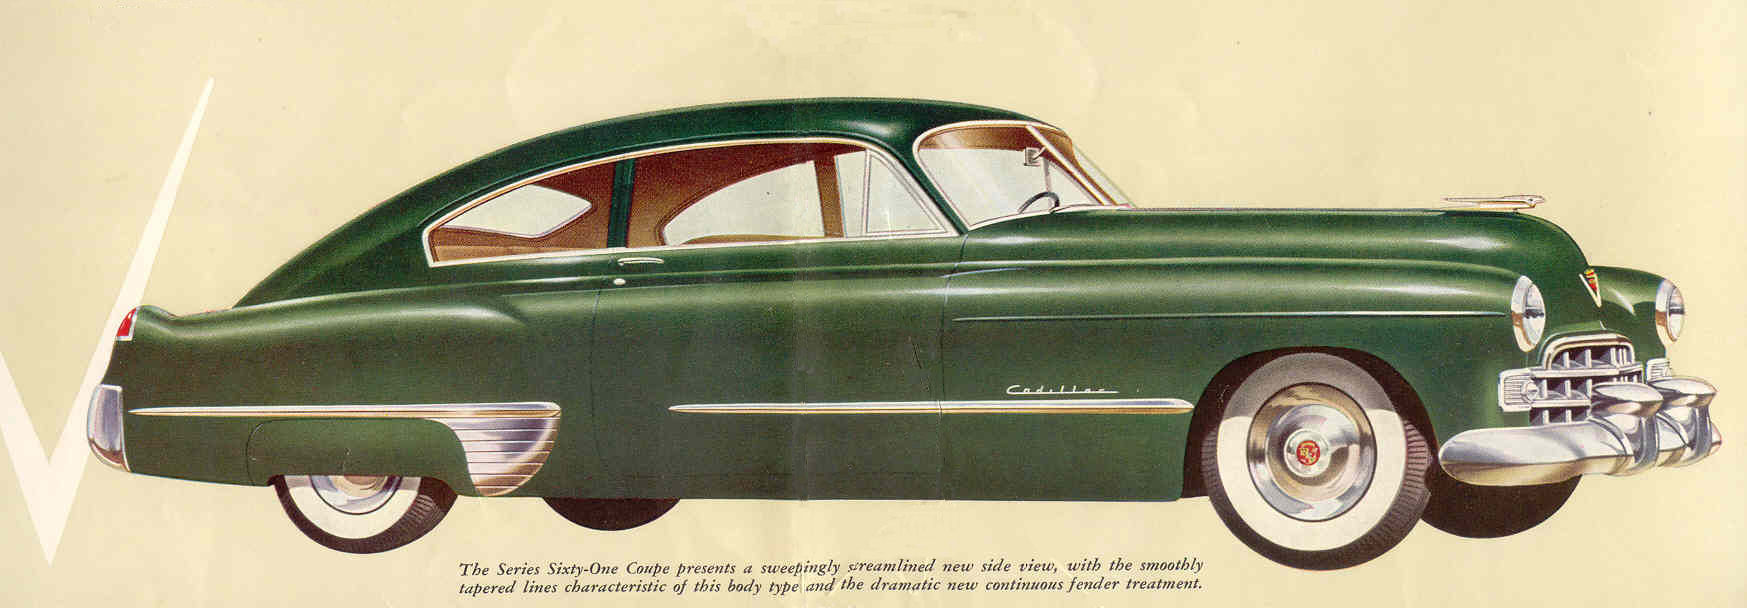 1948 Cadillac Brochure Page 2